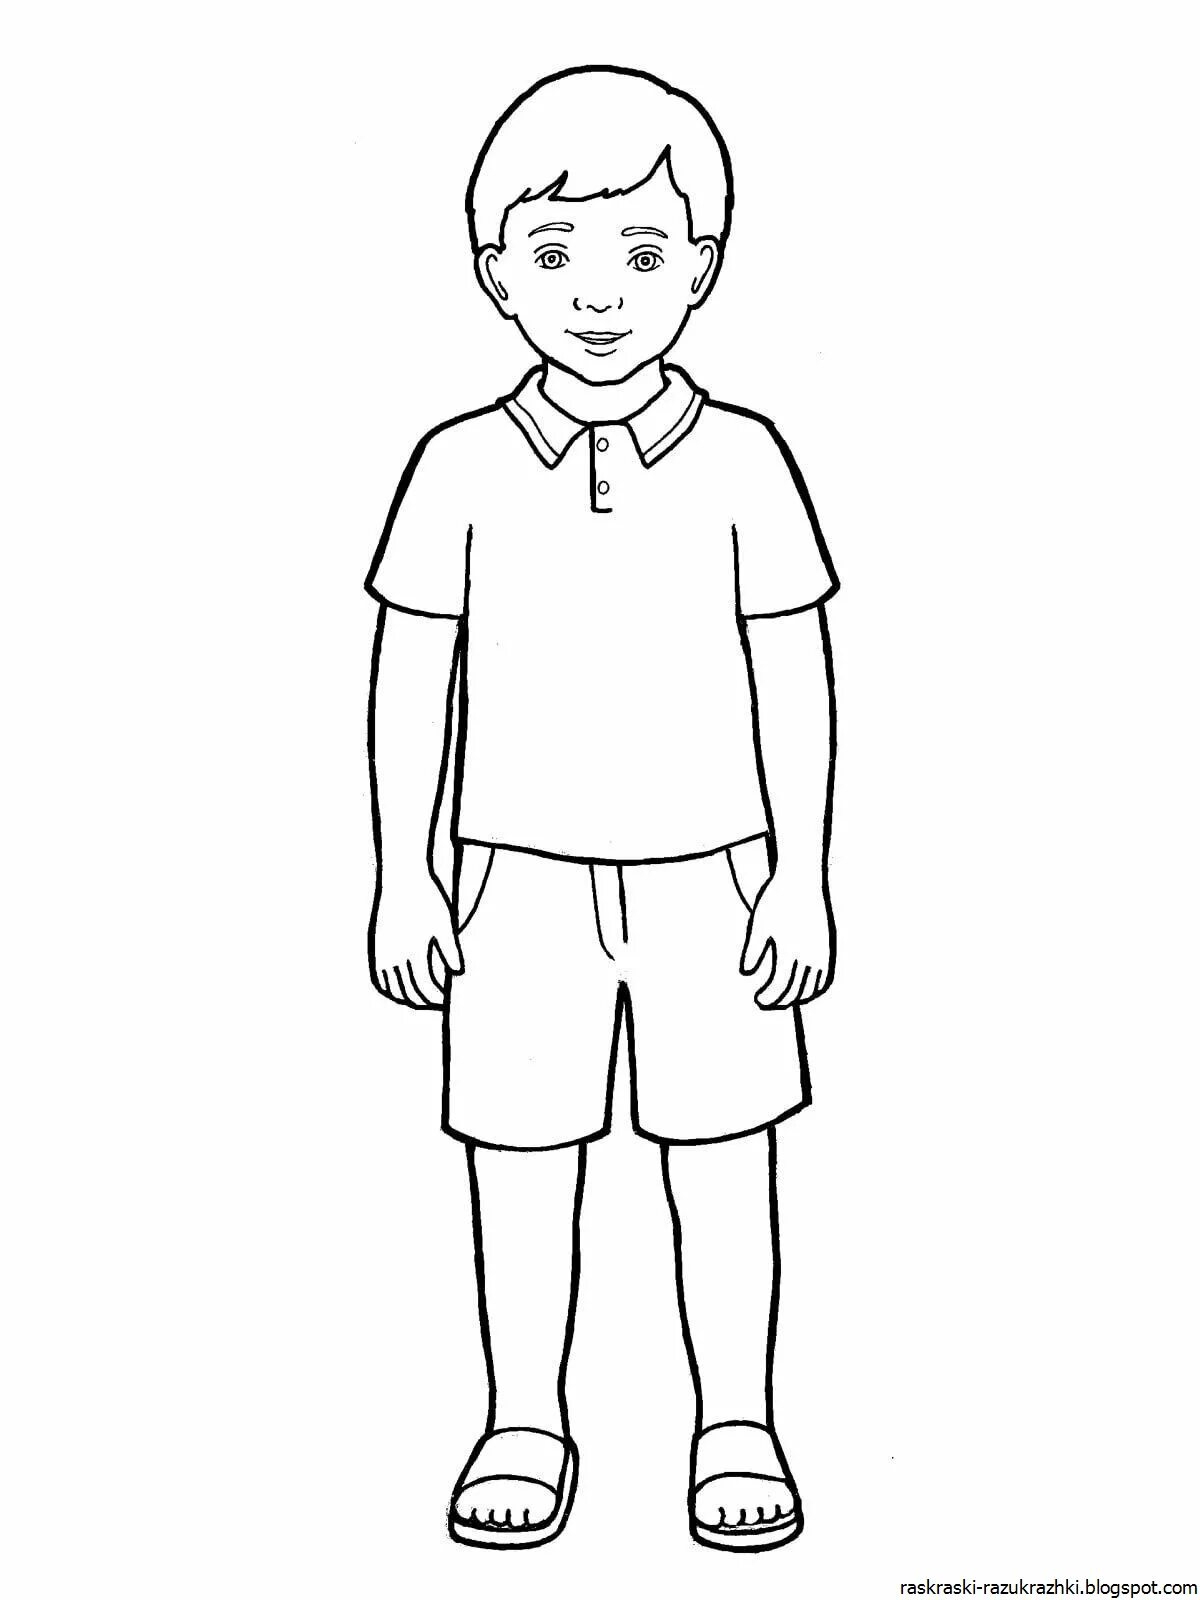 Как нарисовать мальчика поэтапно карандашом для начинающих